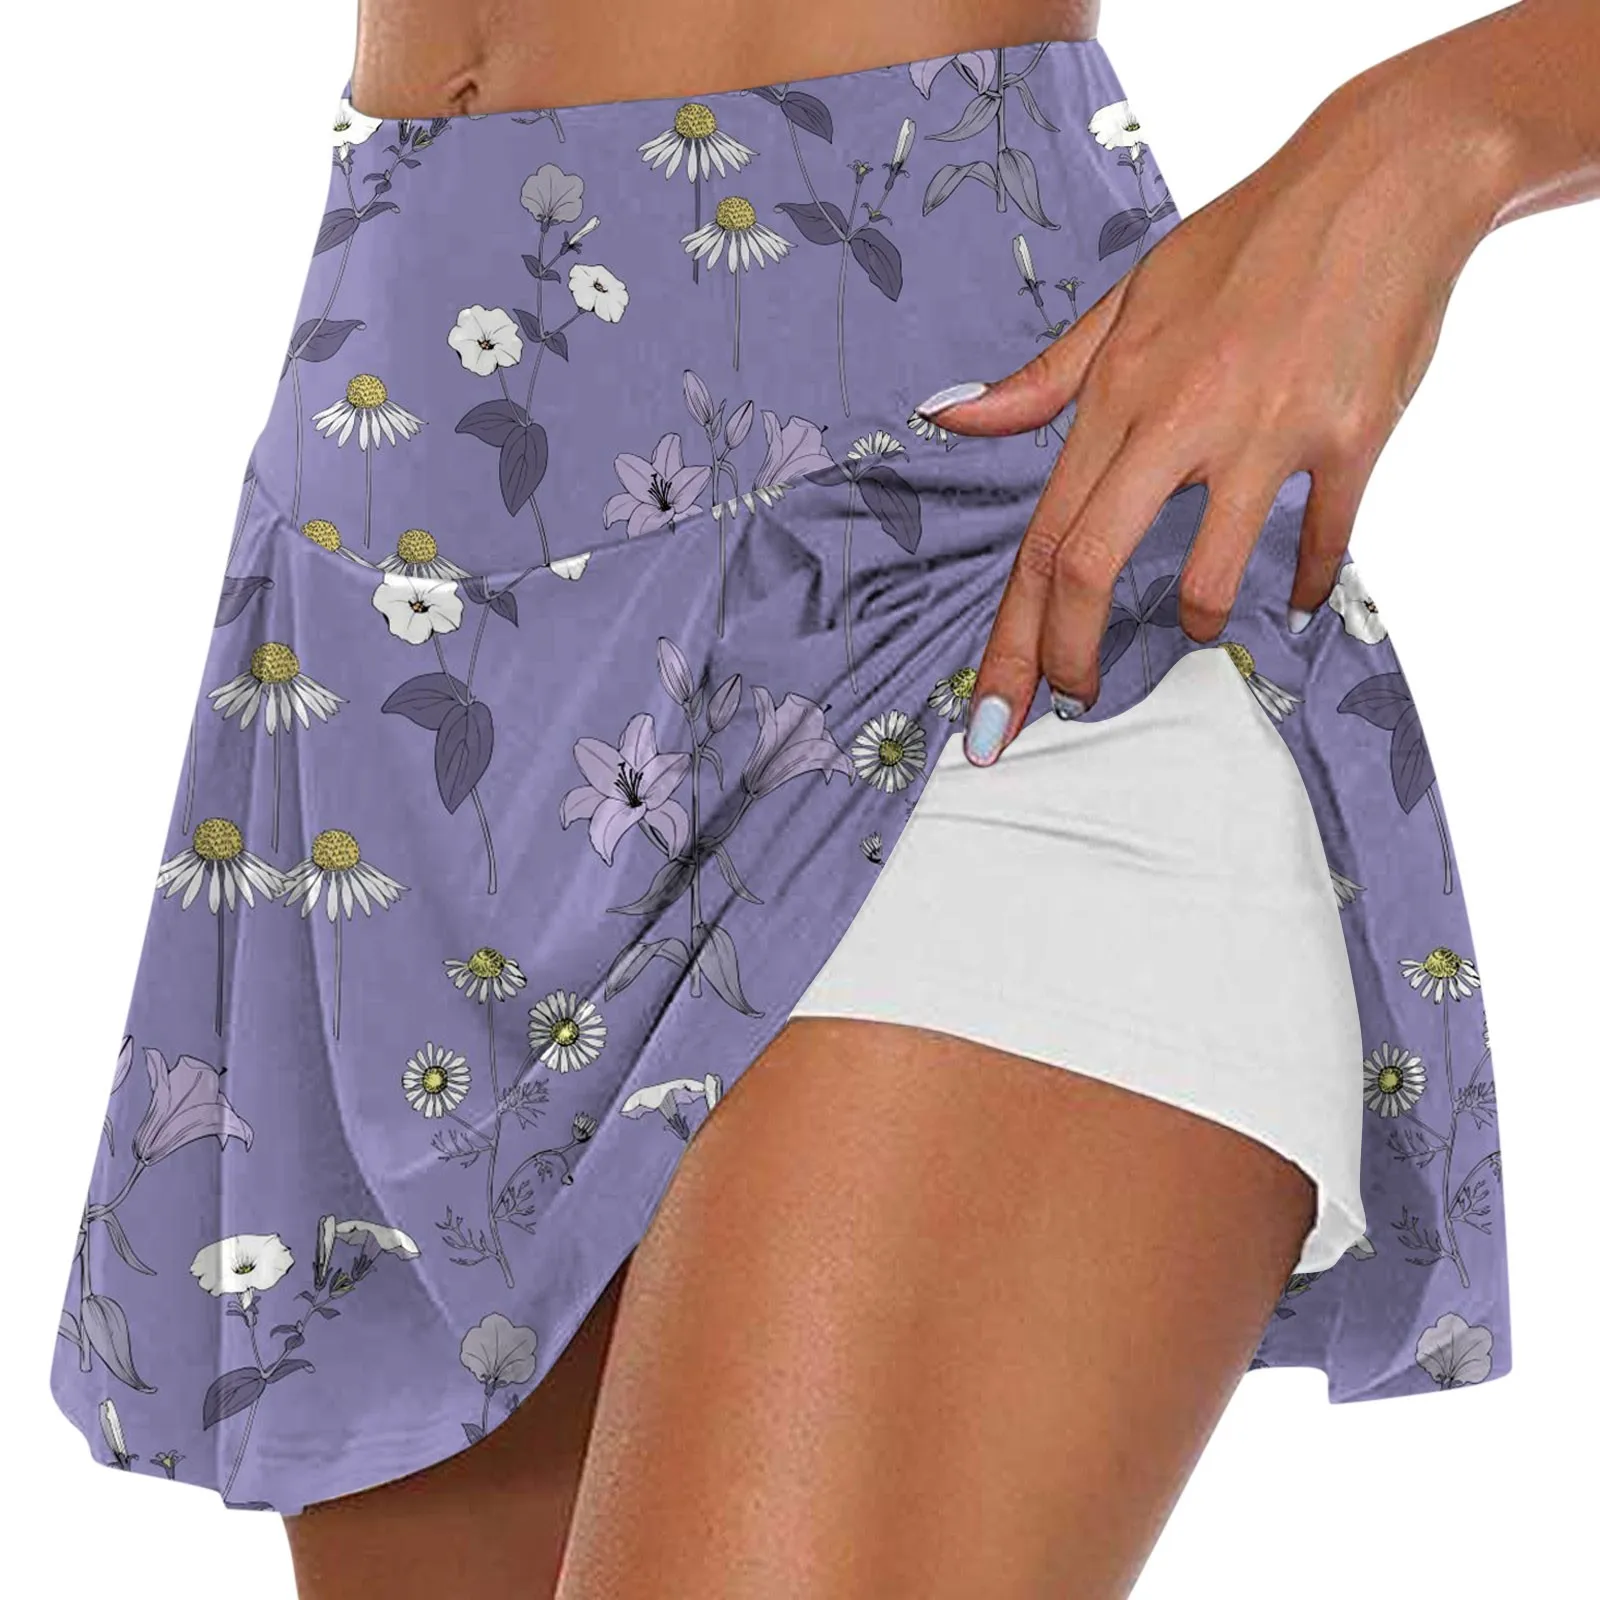  Тренировочная юбка для бега Женская повседневная юбка с цветочным принтом Спорт Фитнес Йога Теннис Юбка Гольф Бадминтон Плиссированная короткая юбка